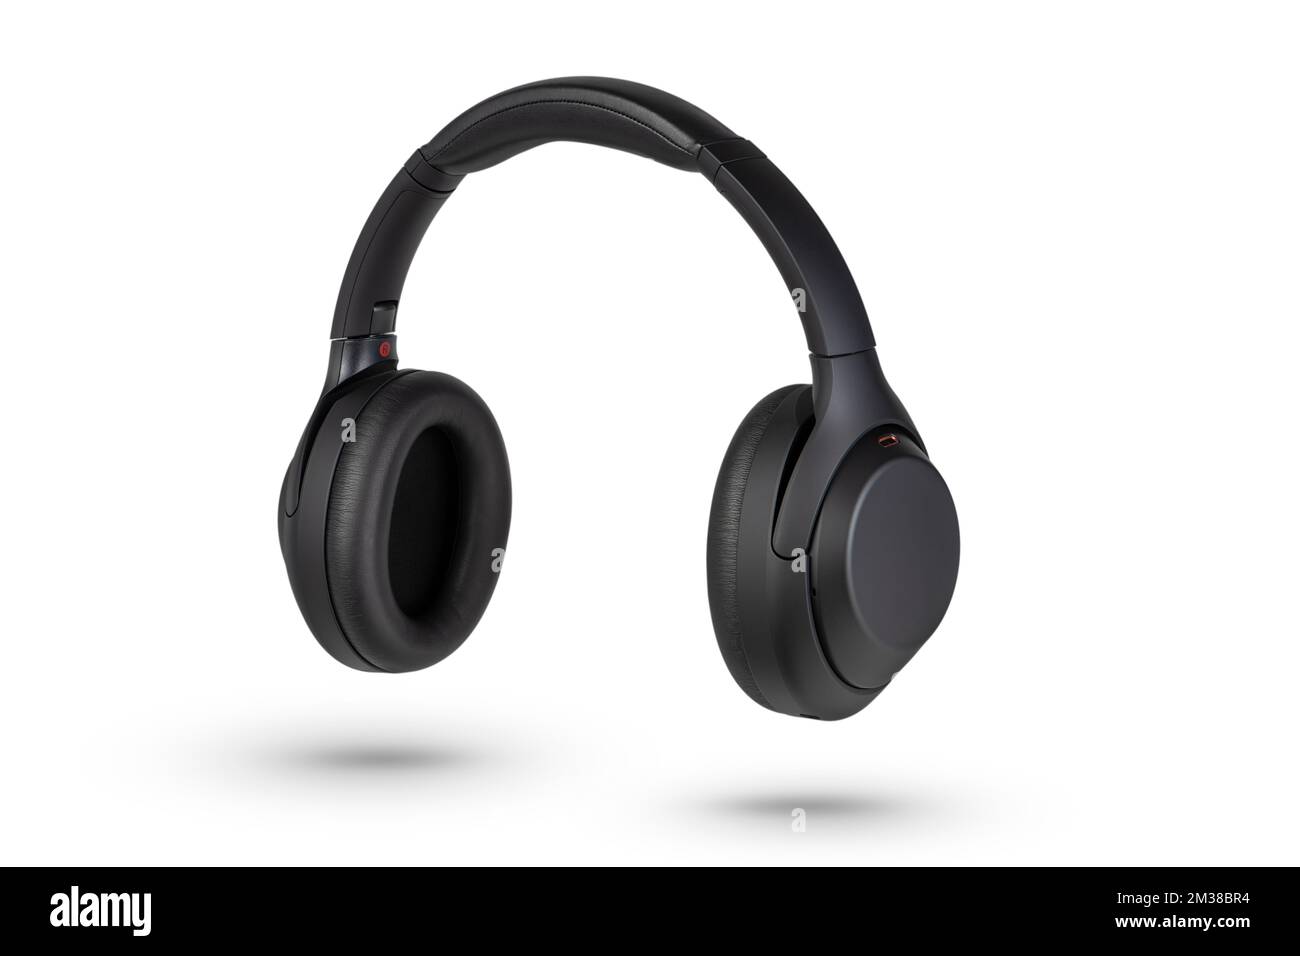 Kopfhörer isolieren sich auf Weiß. Kabellose Kopfhörer in Schwarz, hohe Qualität, isoliert auf weißem Hintergrund, für Werbung oder Produktkataloge. Stockfoto